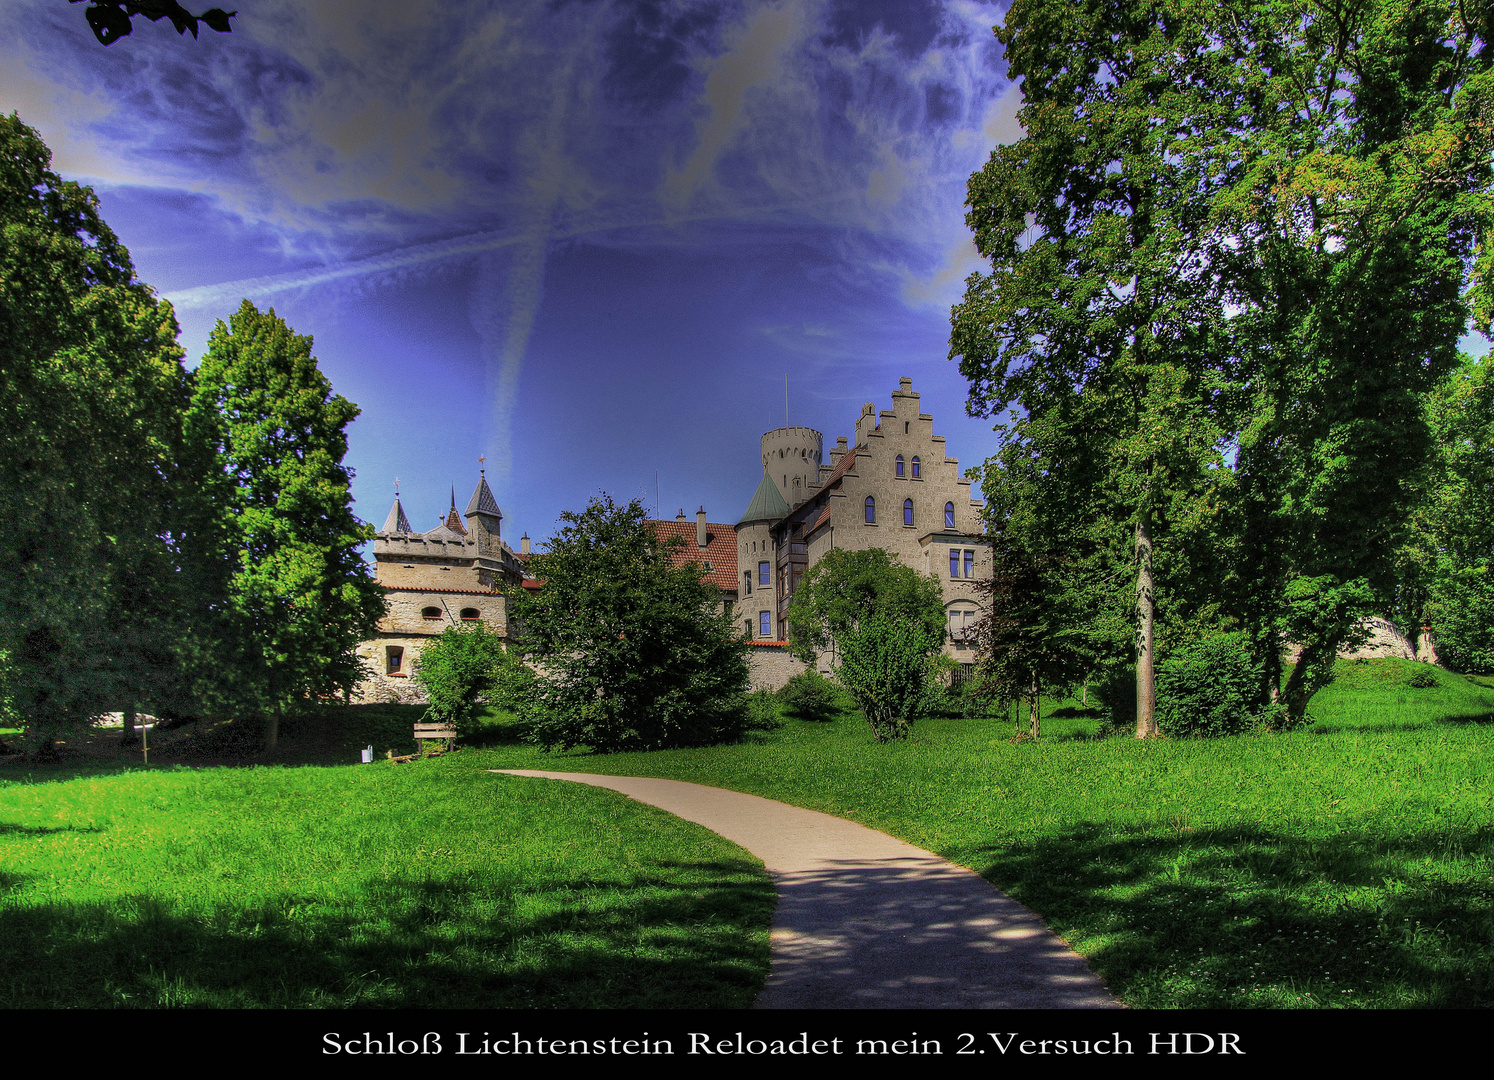 Schloß Lichtenstein Reloadet 2. Versuch in HDR